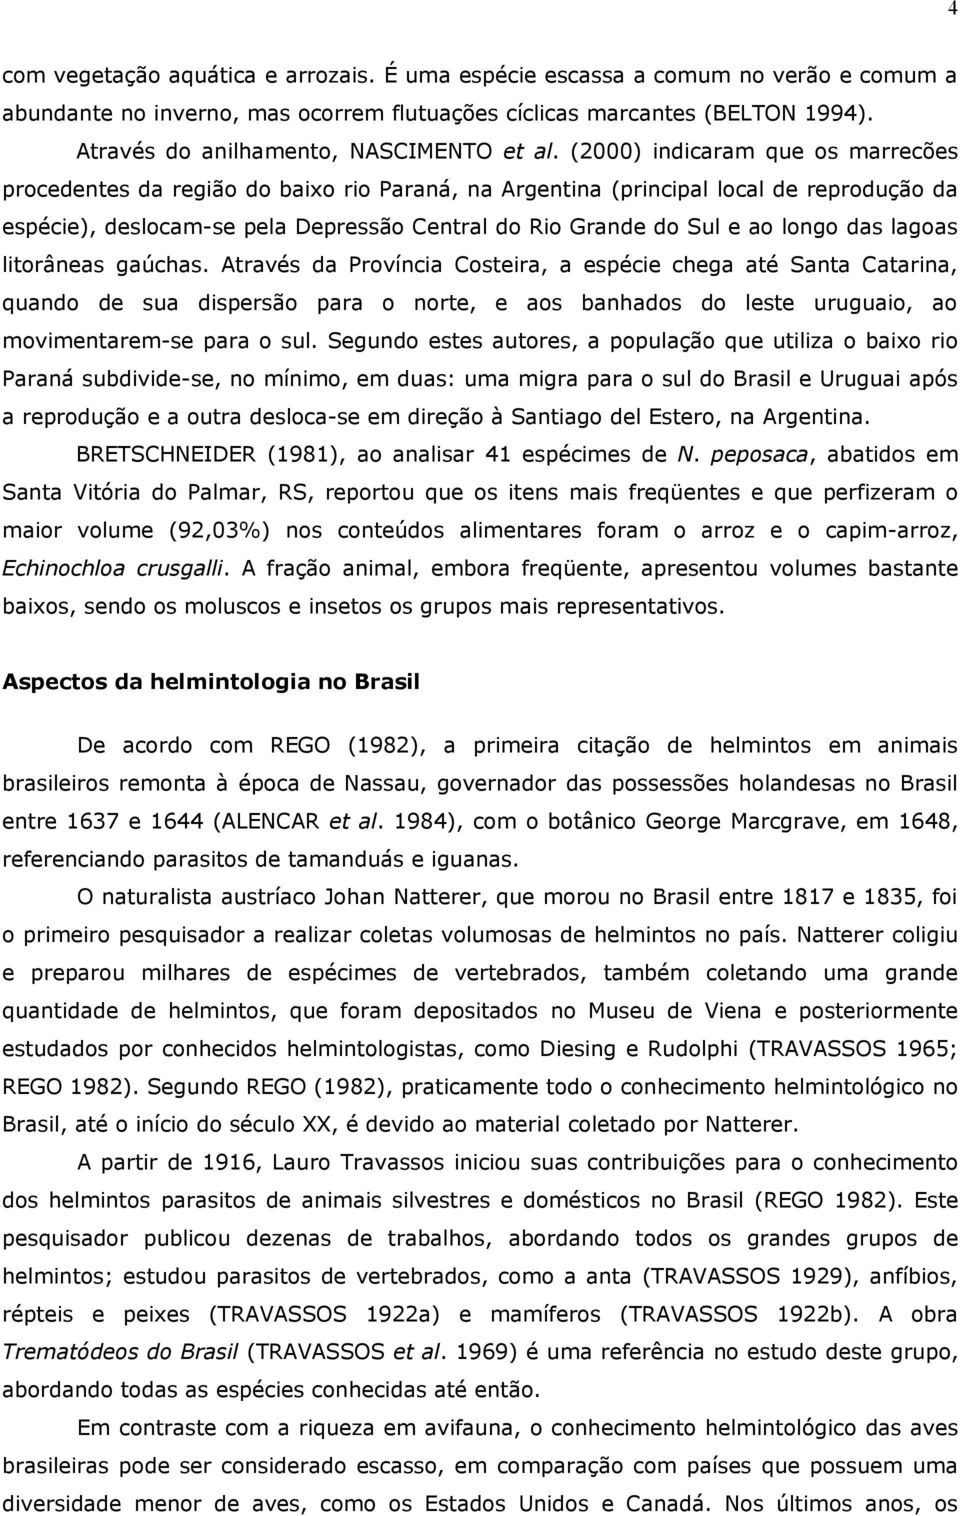 (2000) indicaram que os marrecões procedentes da região do baixo rio Paraná, na Argentina (principal local de reprodução da espécie), deslocam-se pela Depressão Central do Rio Grande do Sul e ao